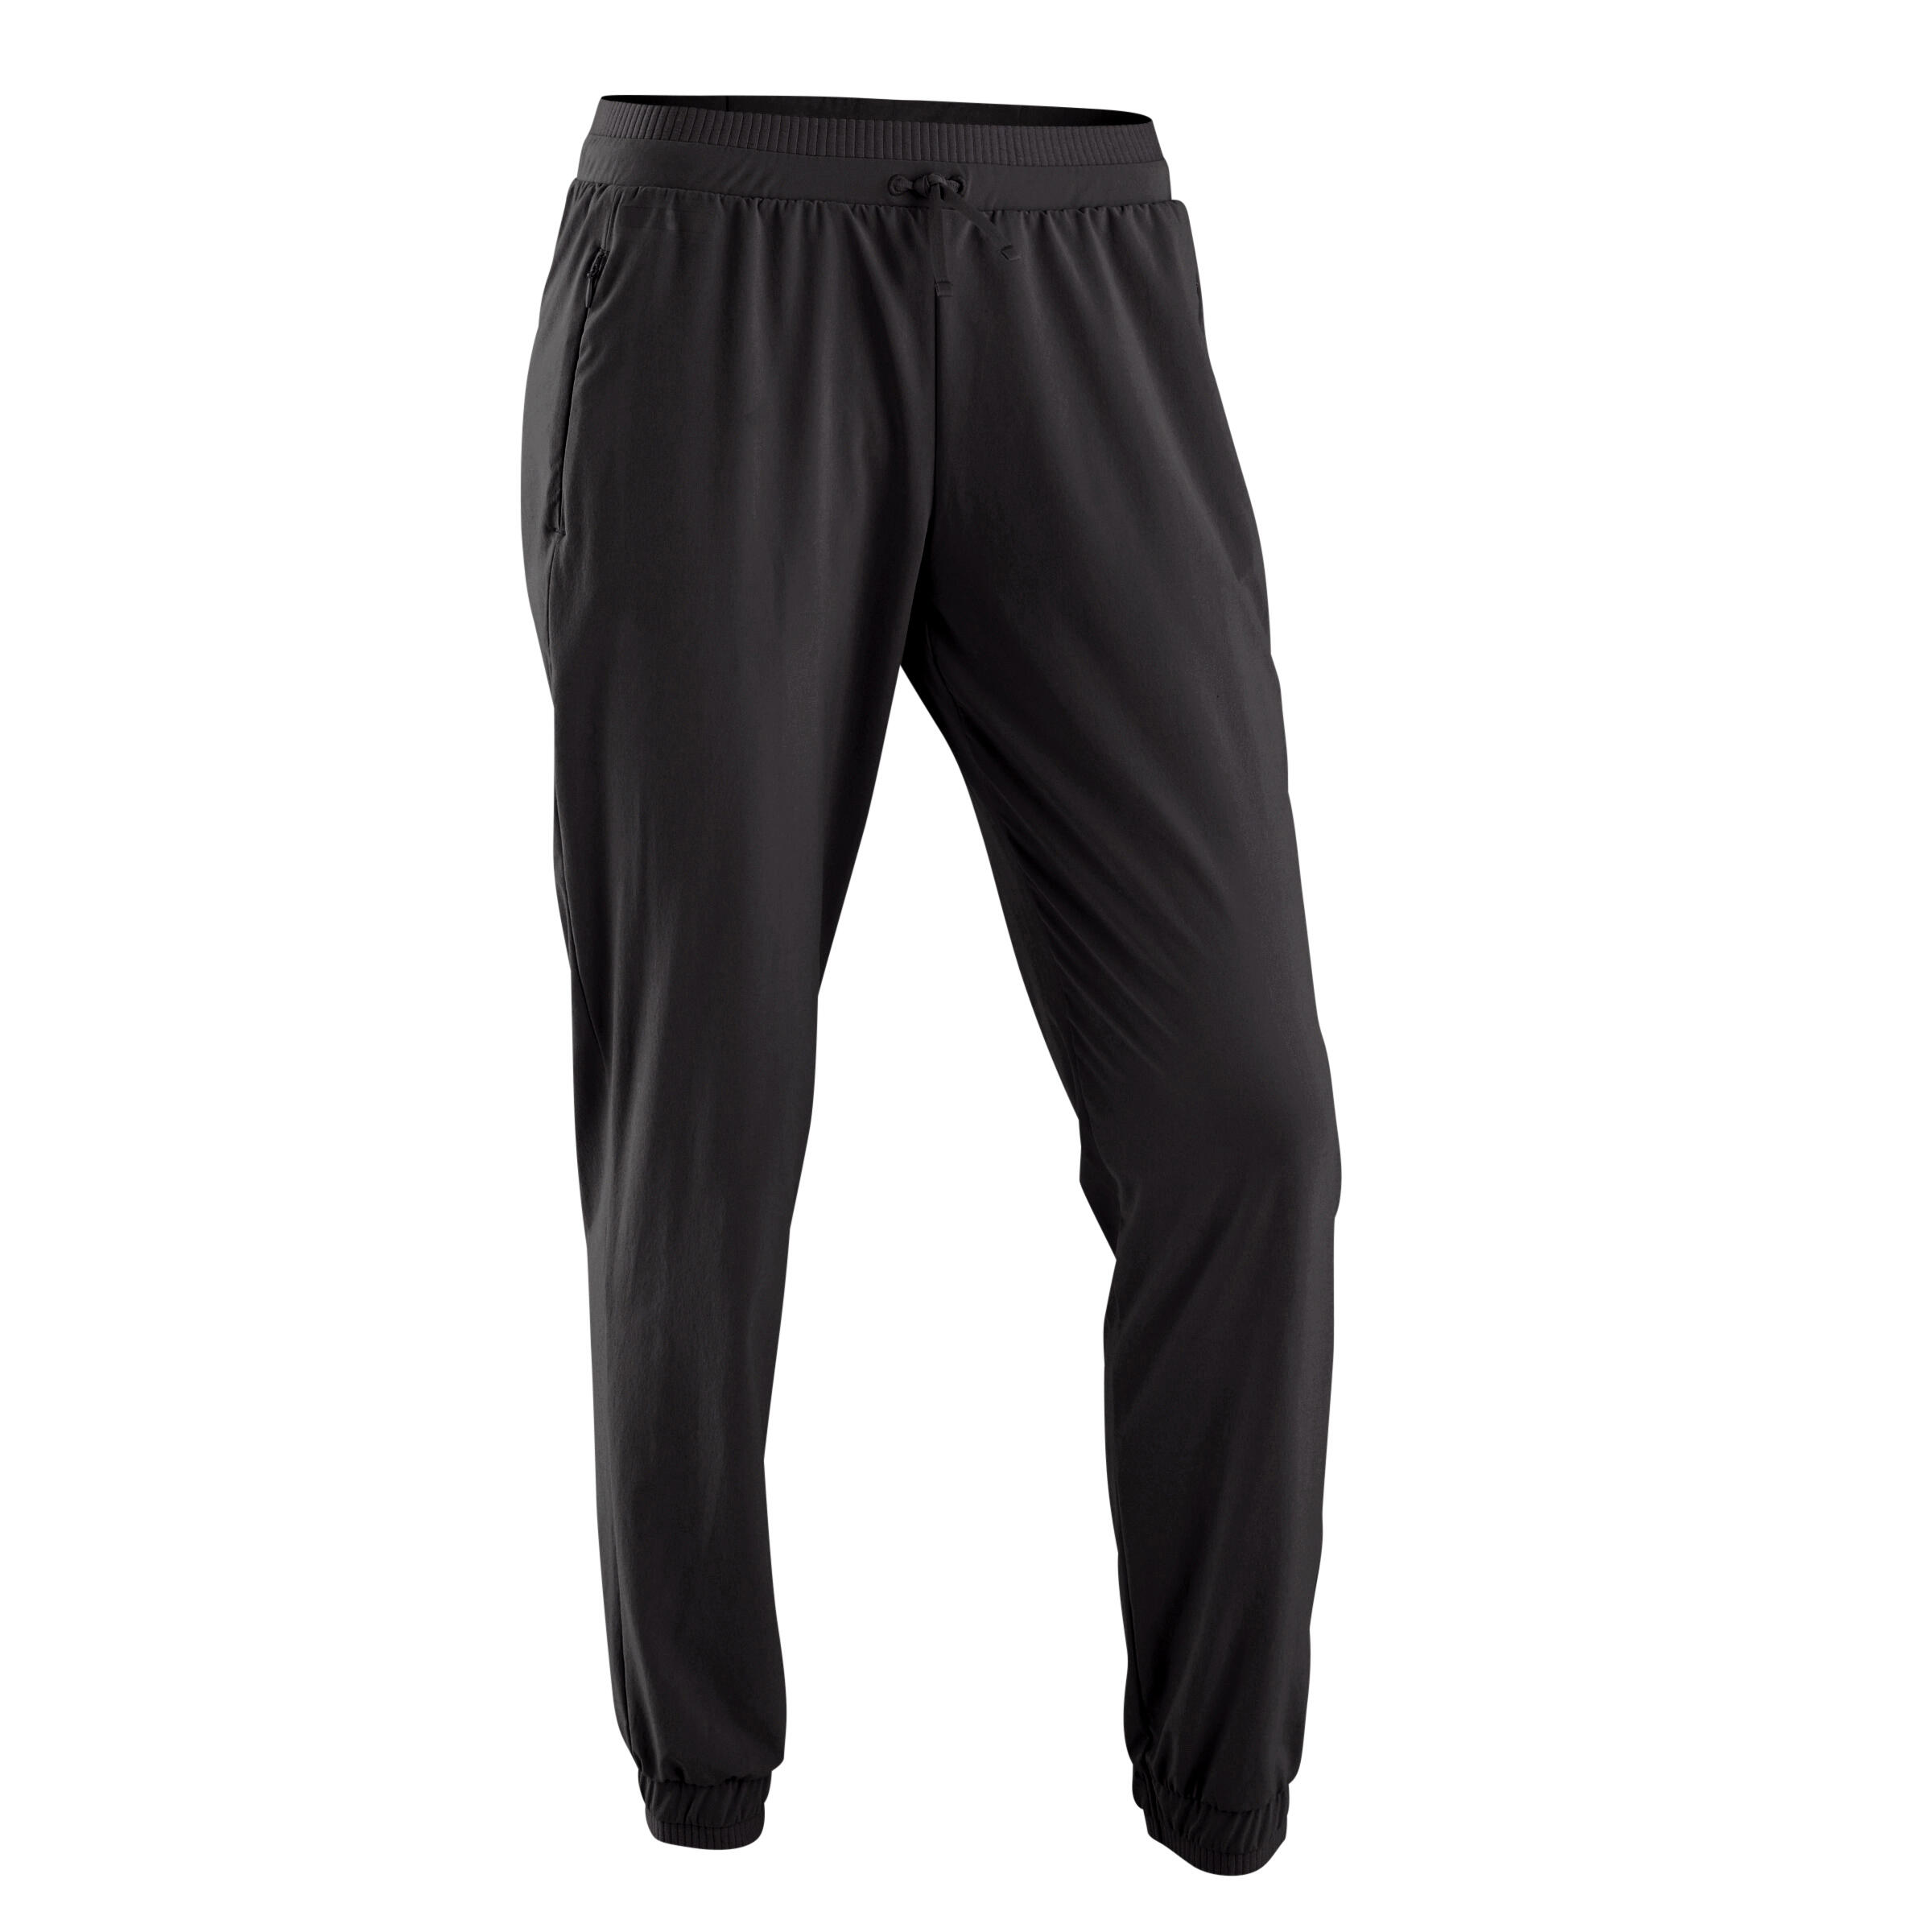 Buy Men's Running Breathable Trousers Dry - Dark Blue Online | Decathlon